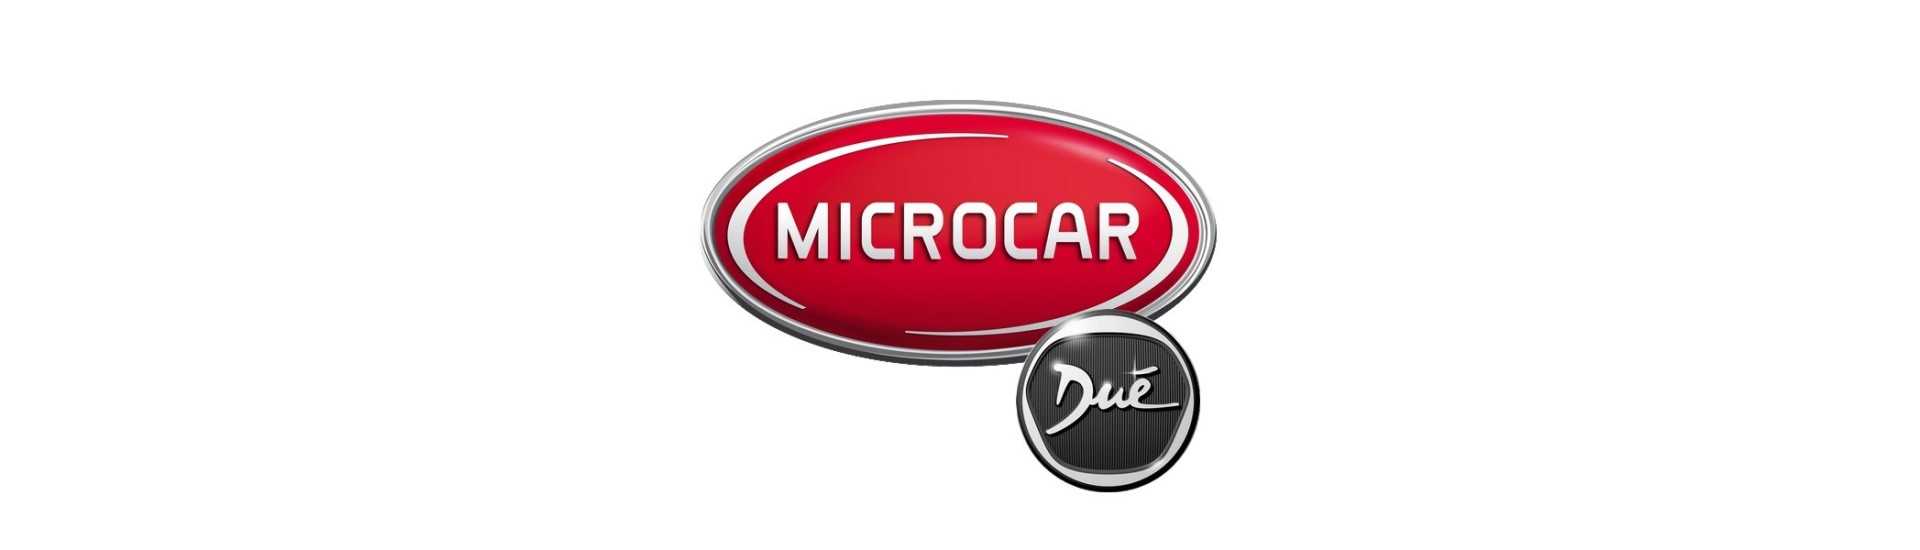 La puerta del sombrero dispara el mejor precio del coche sin licencia Microcar